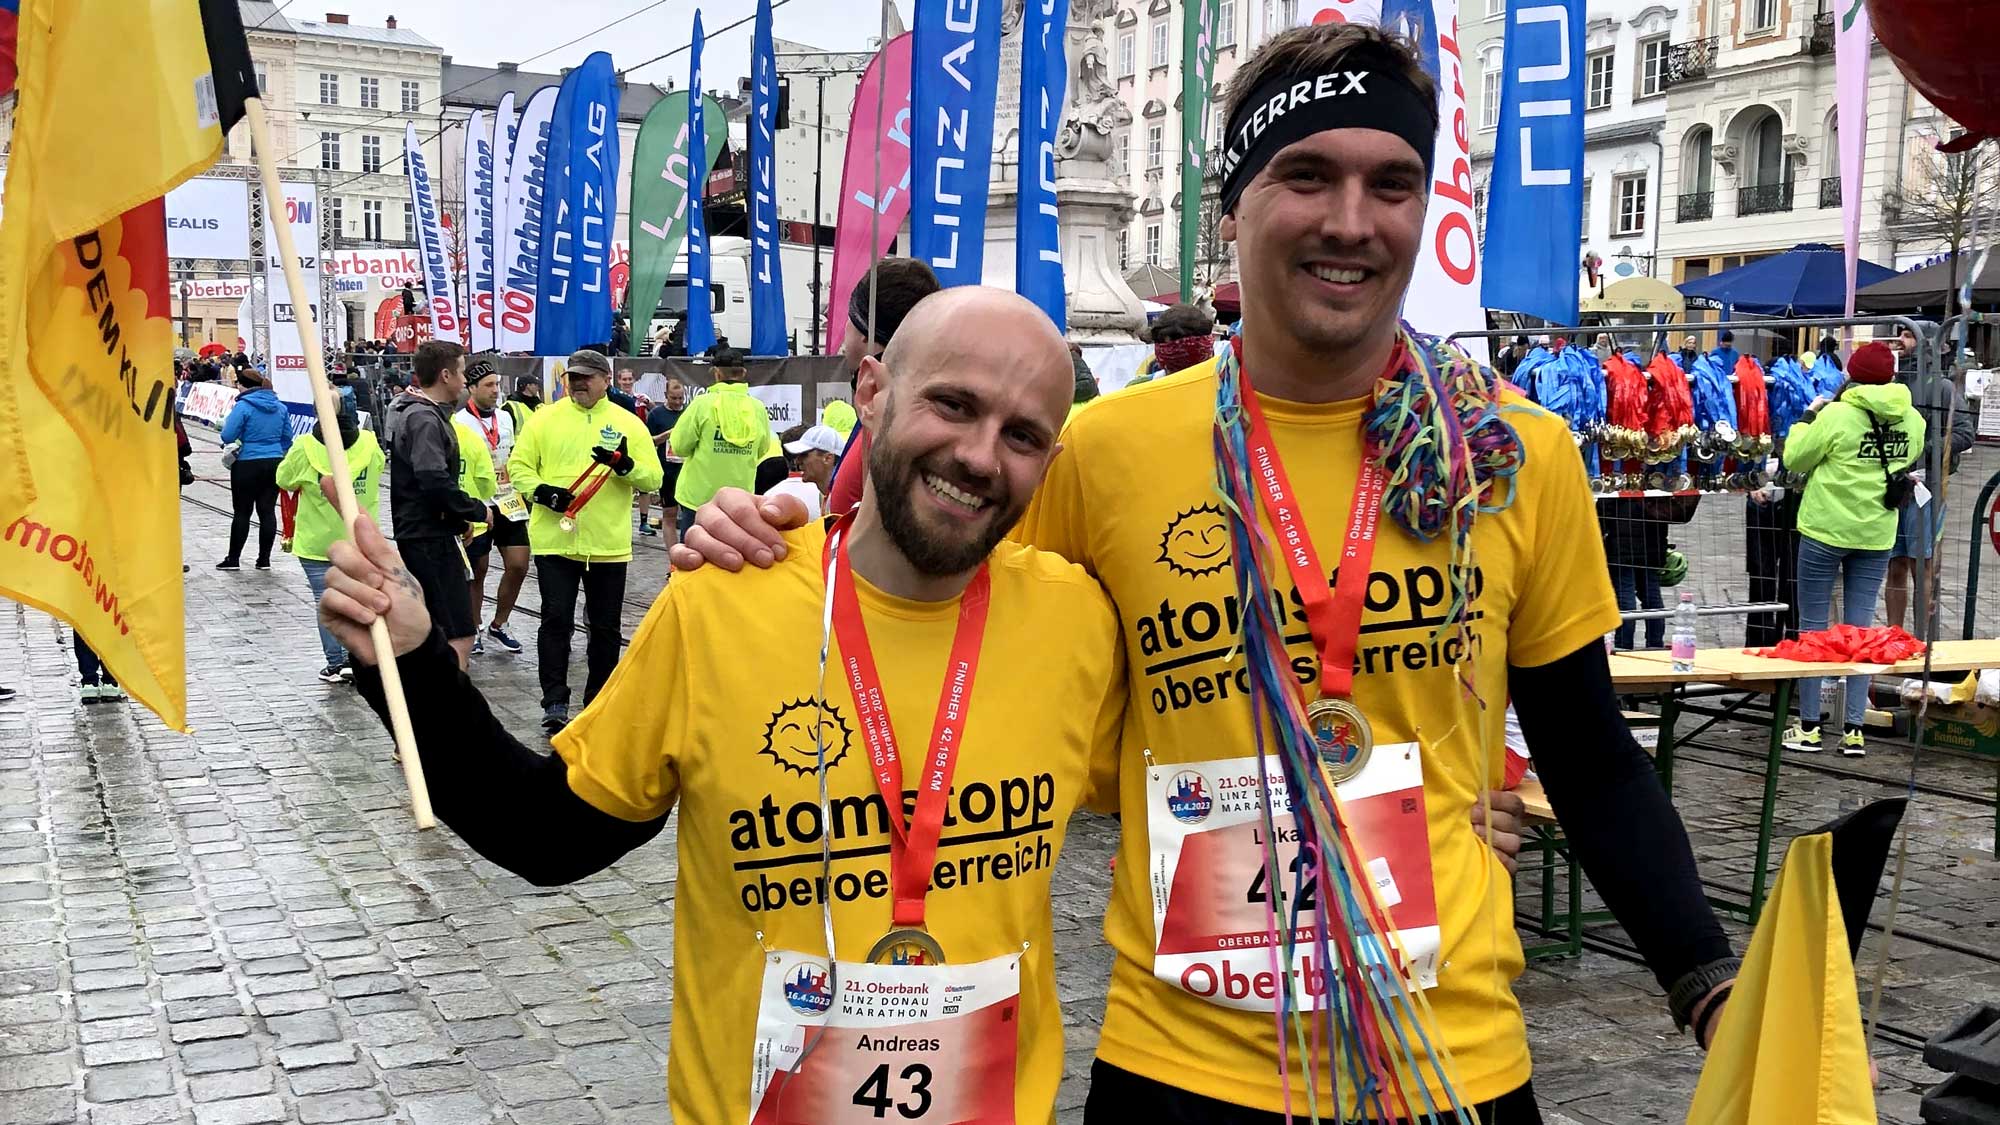 2 atomstopp Läufer mit gelben Laufshirts und Fahnen beim Linz Marathon